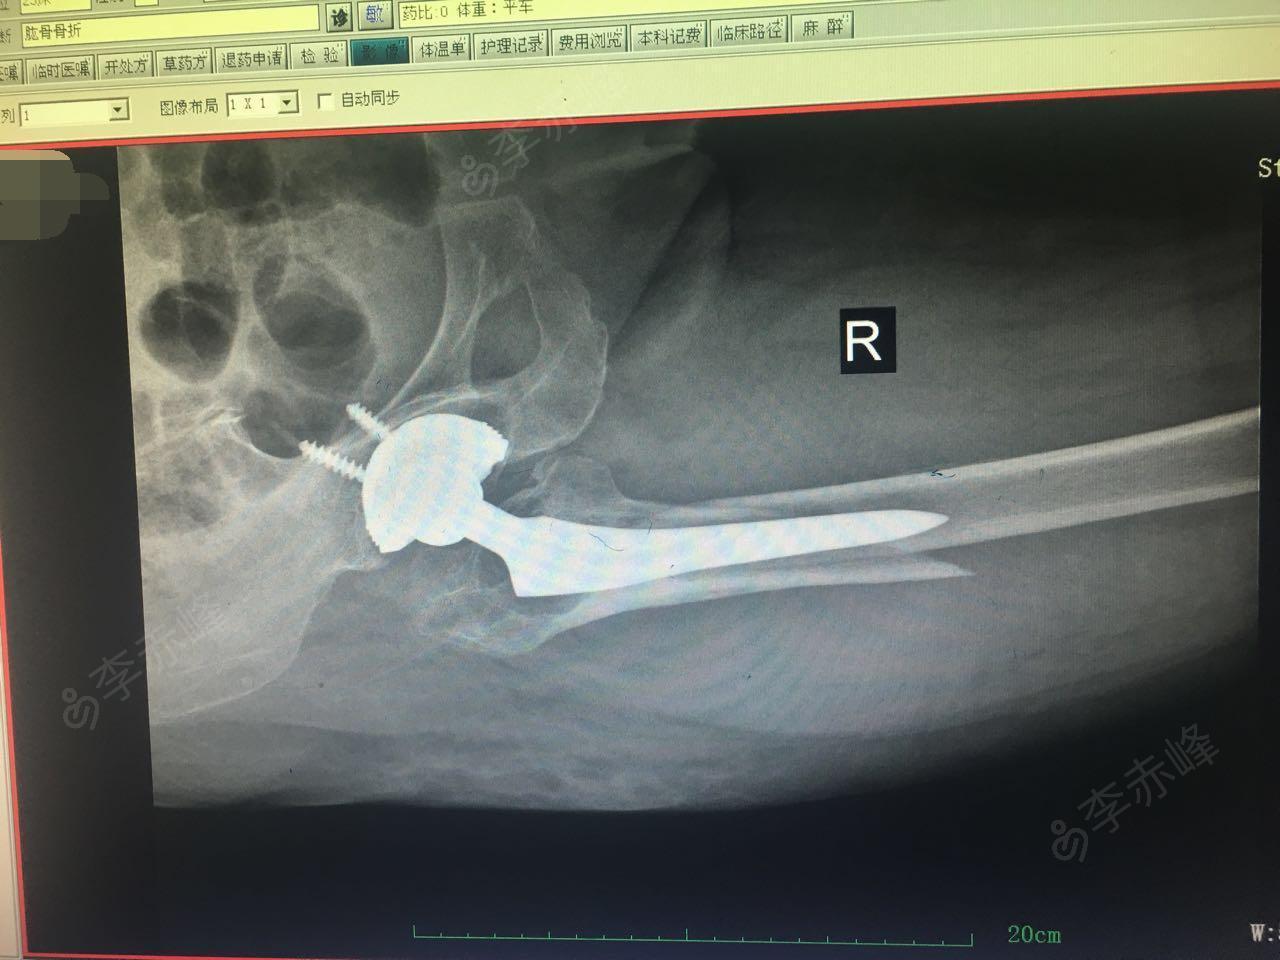 右股骨骨折,右髋骨置换术后